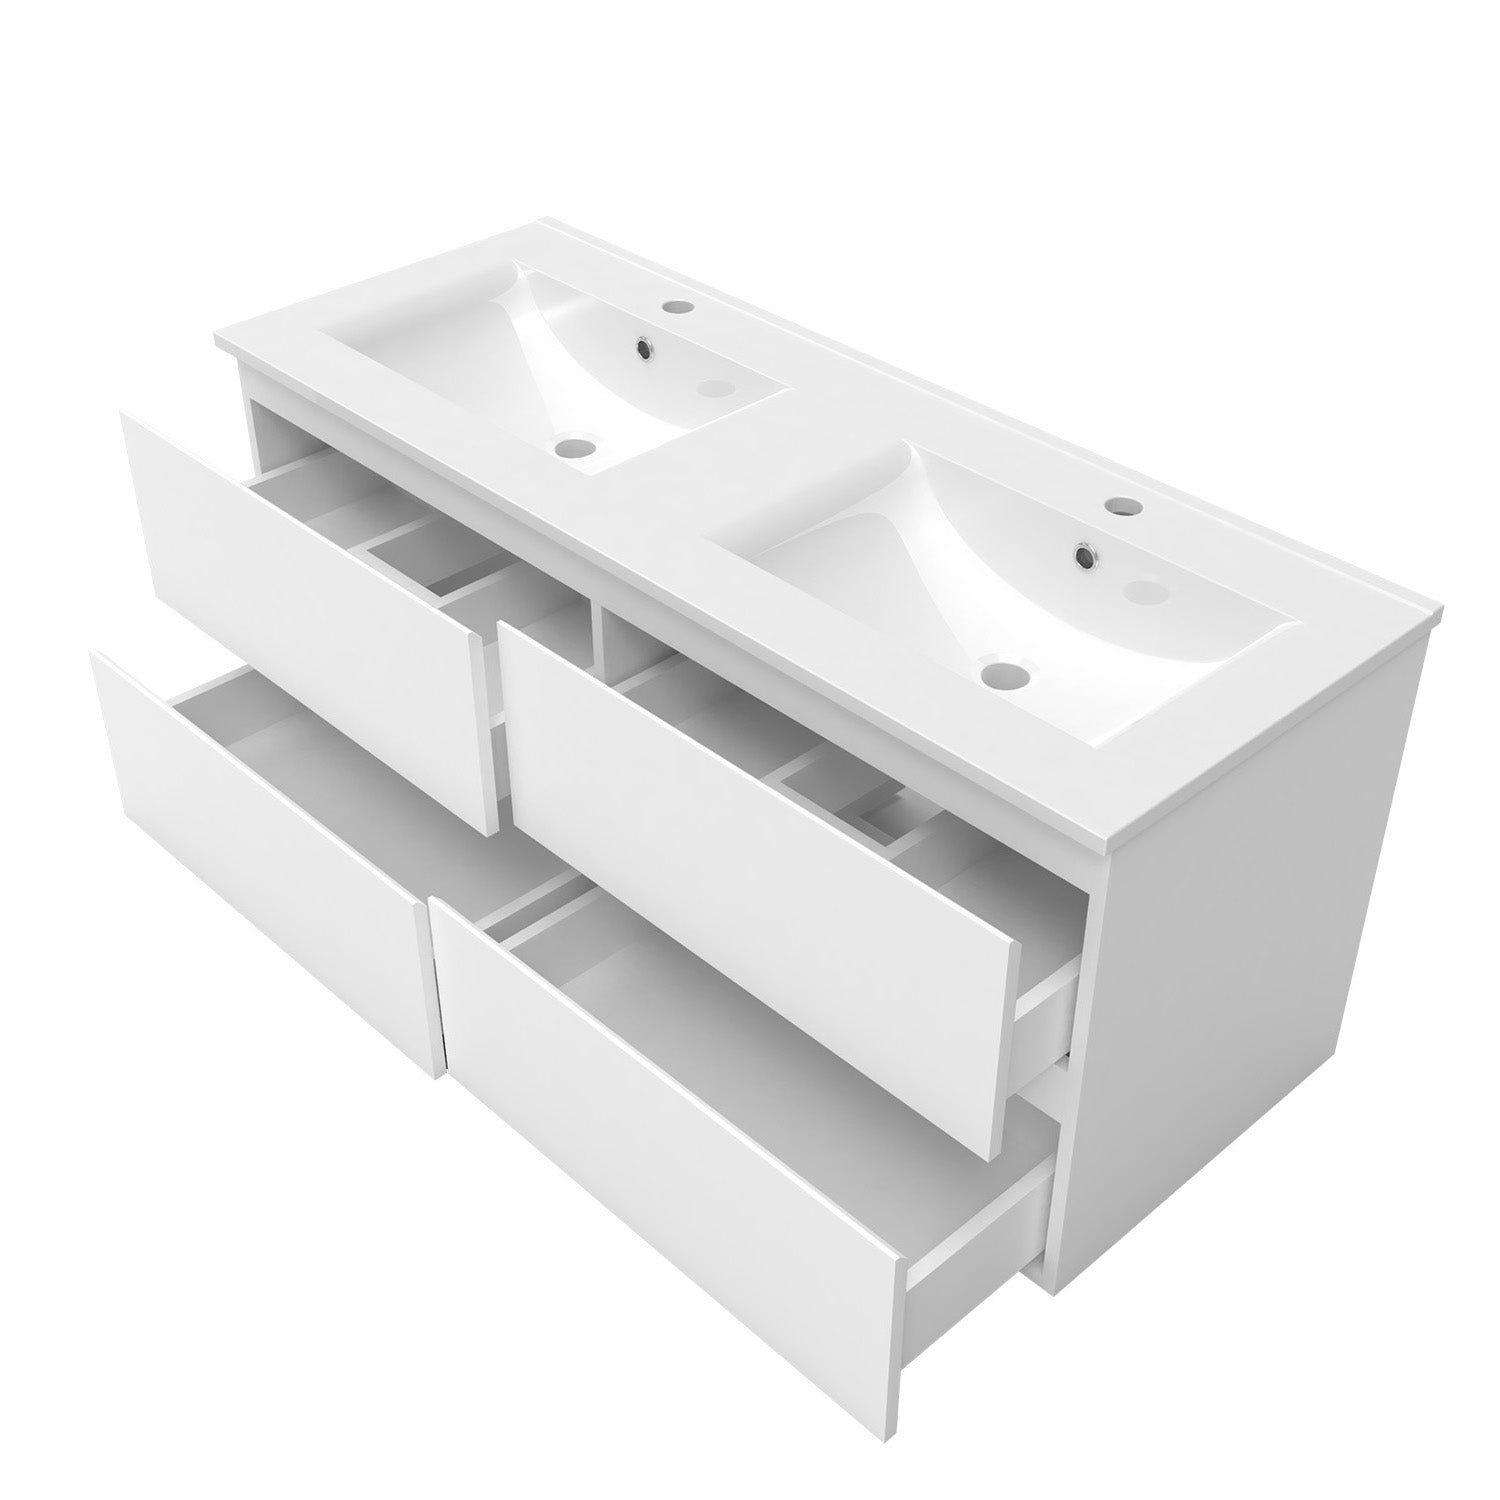 Meuble de salle de bain, Meuble de rangement avec lavabo, Meuble sous vasque suspendu, Blanc/Anthracite/Bois clair 120cm -Livraison gratuite